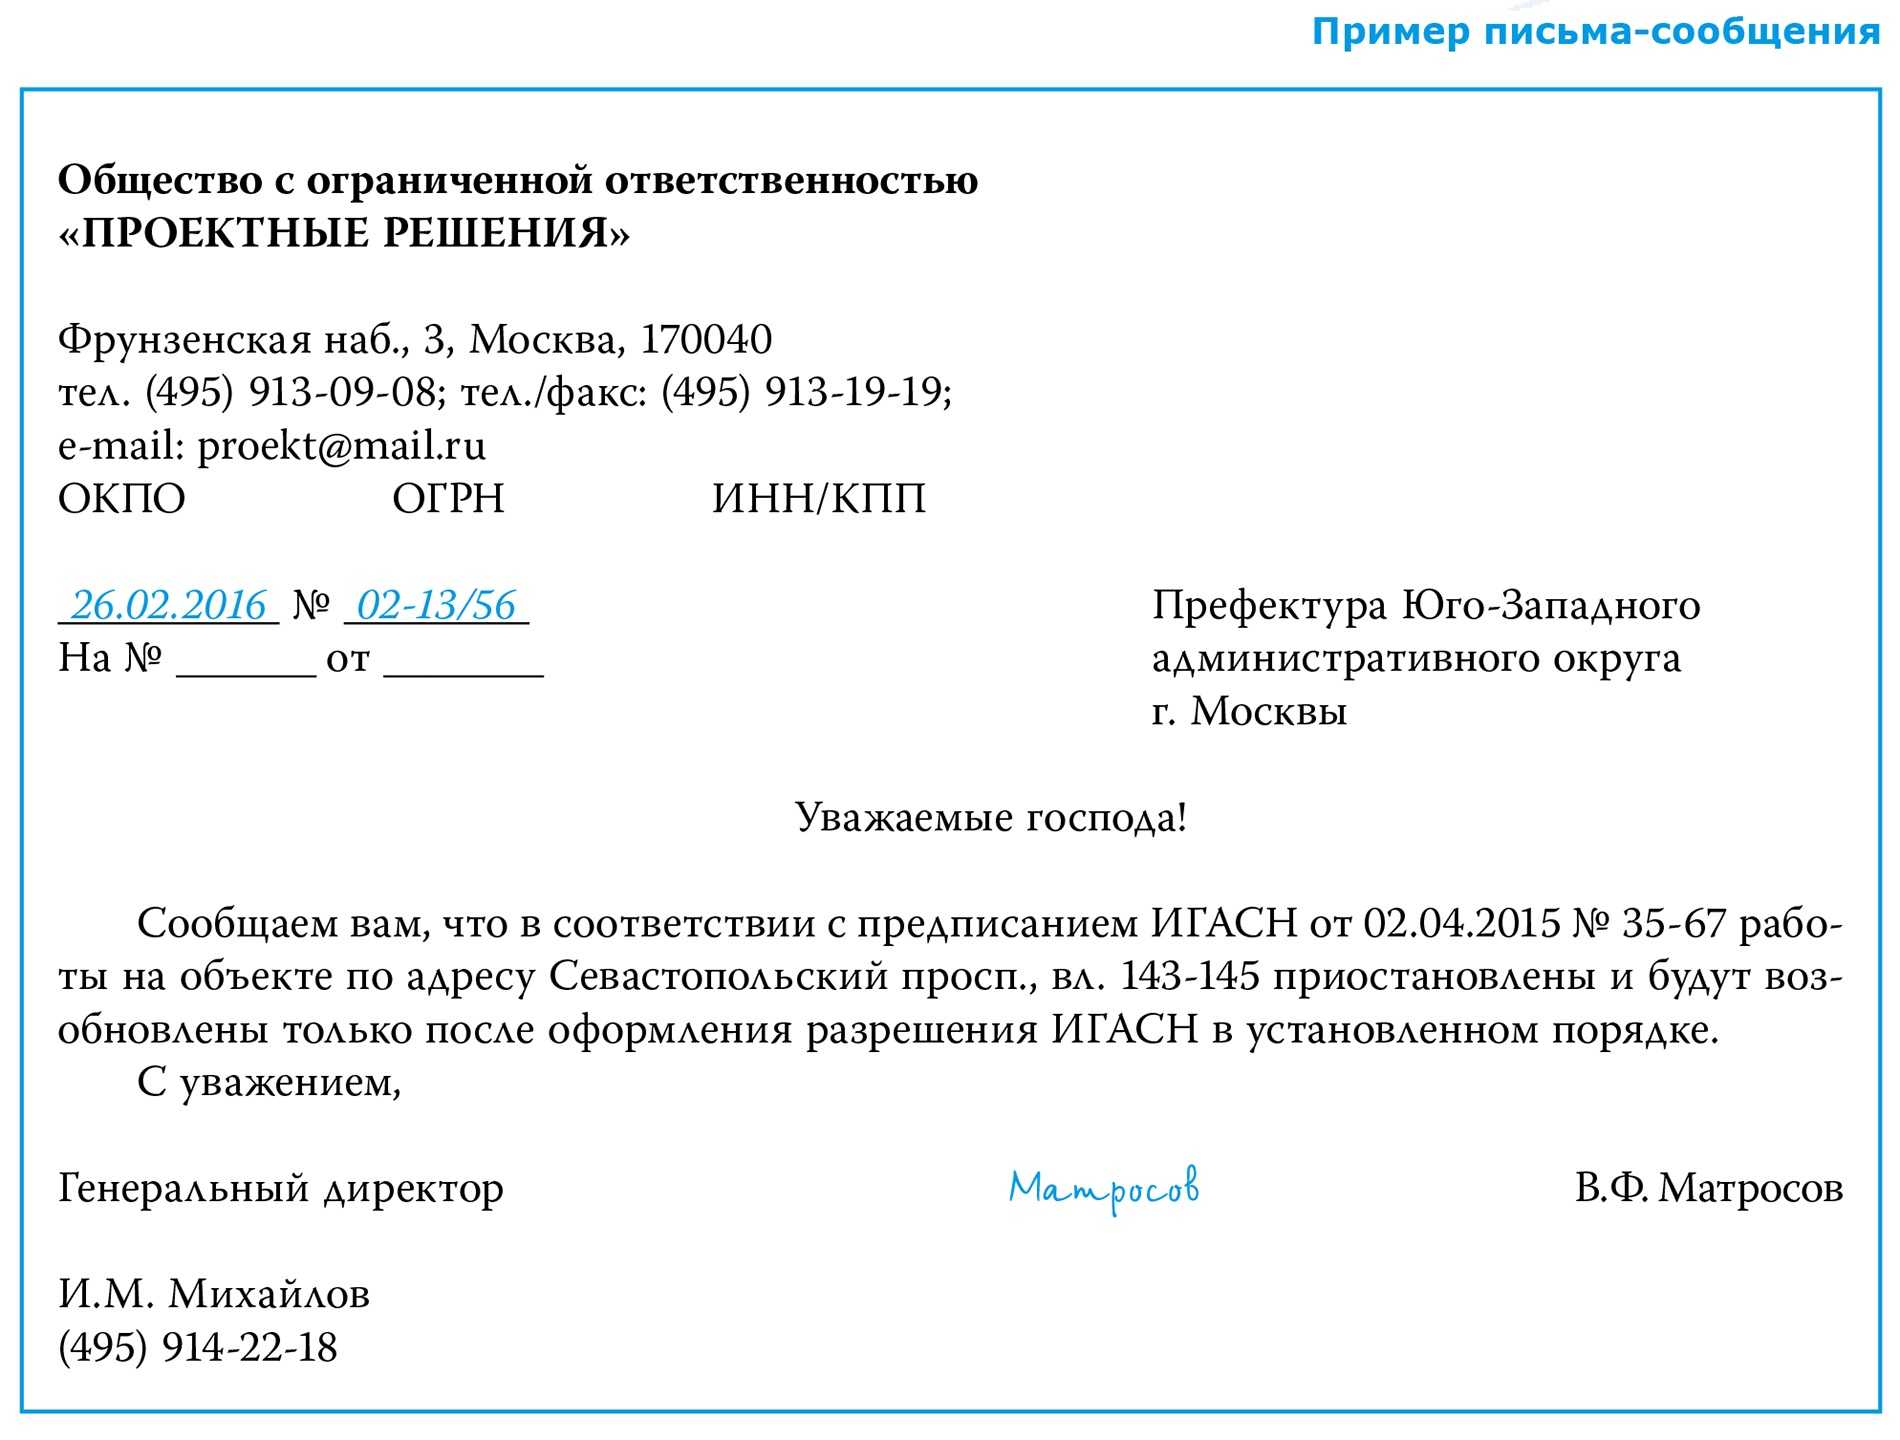 Деловое письмо: виды, правила оформления, структура |  бизнес-портал ecsb.ru